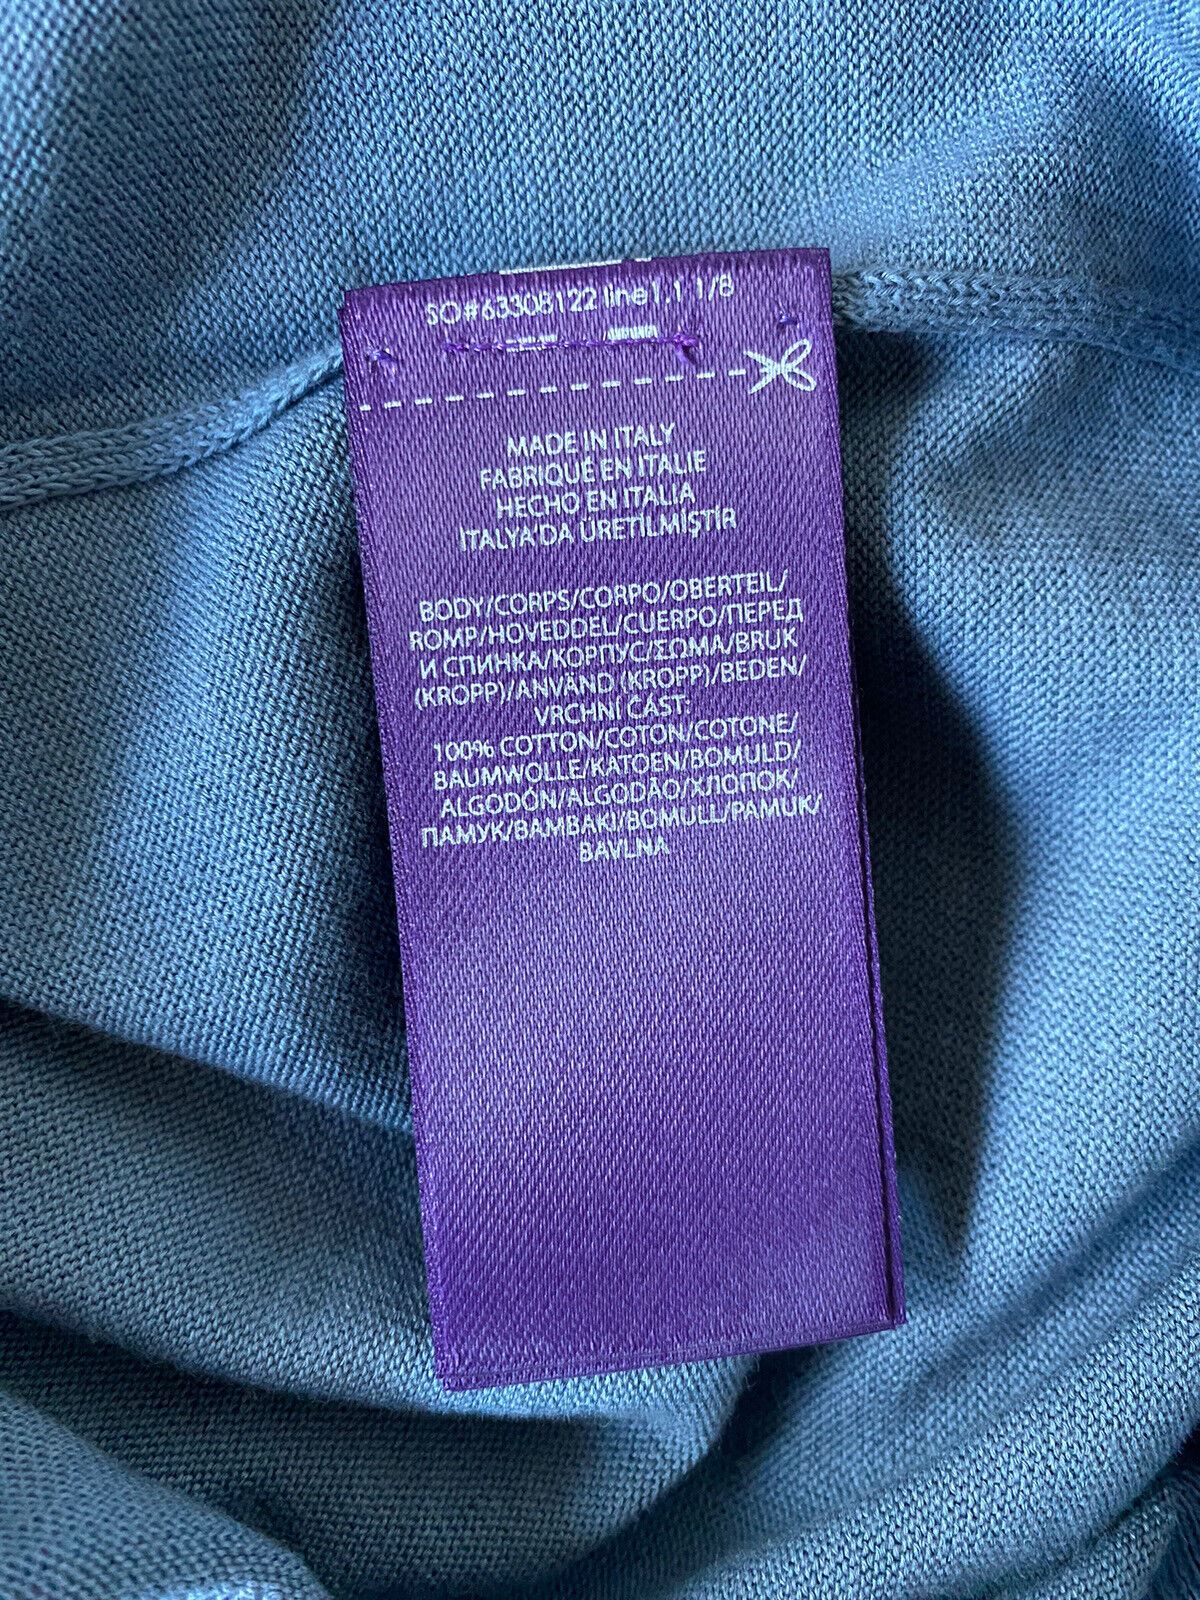 Neu mit Etikett: 695 $ Ralph Lauren Purple Label Baumwollpullover in Blau, Größe L, hergestellt in Italien